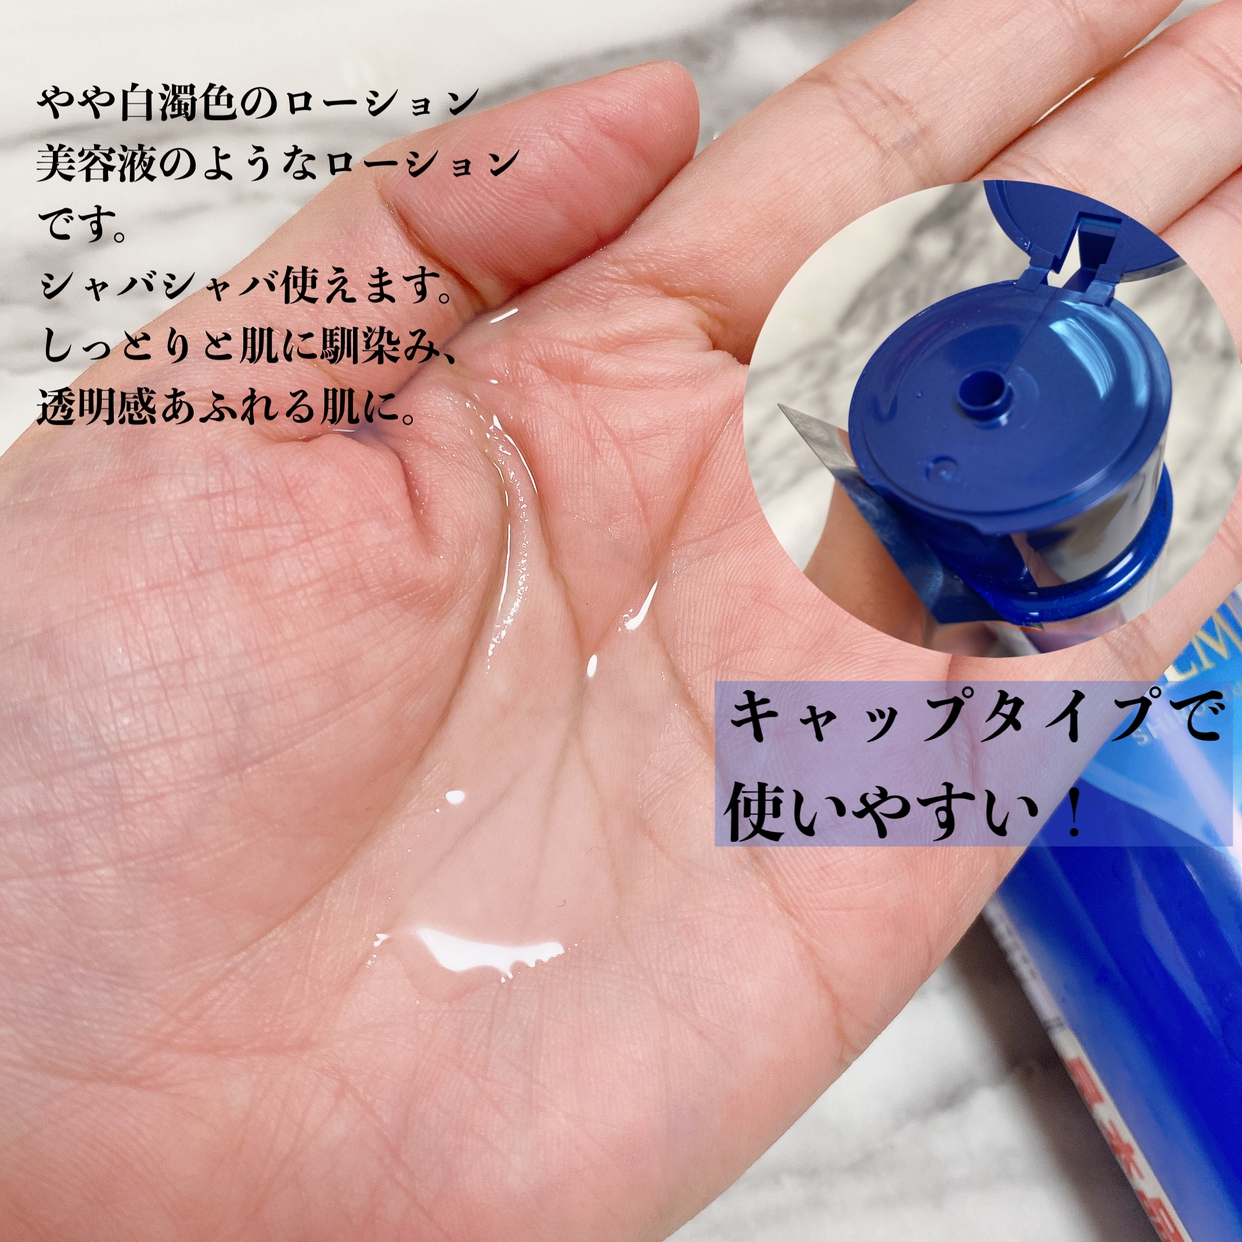 肌ラボ(HADALABO) 白潤プレミアム 薬用浸透美白化粧水に関するちーこすさんの口コミ画像2